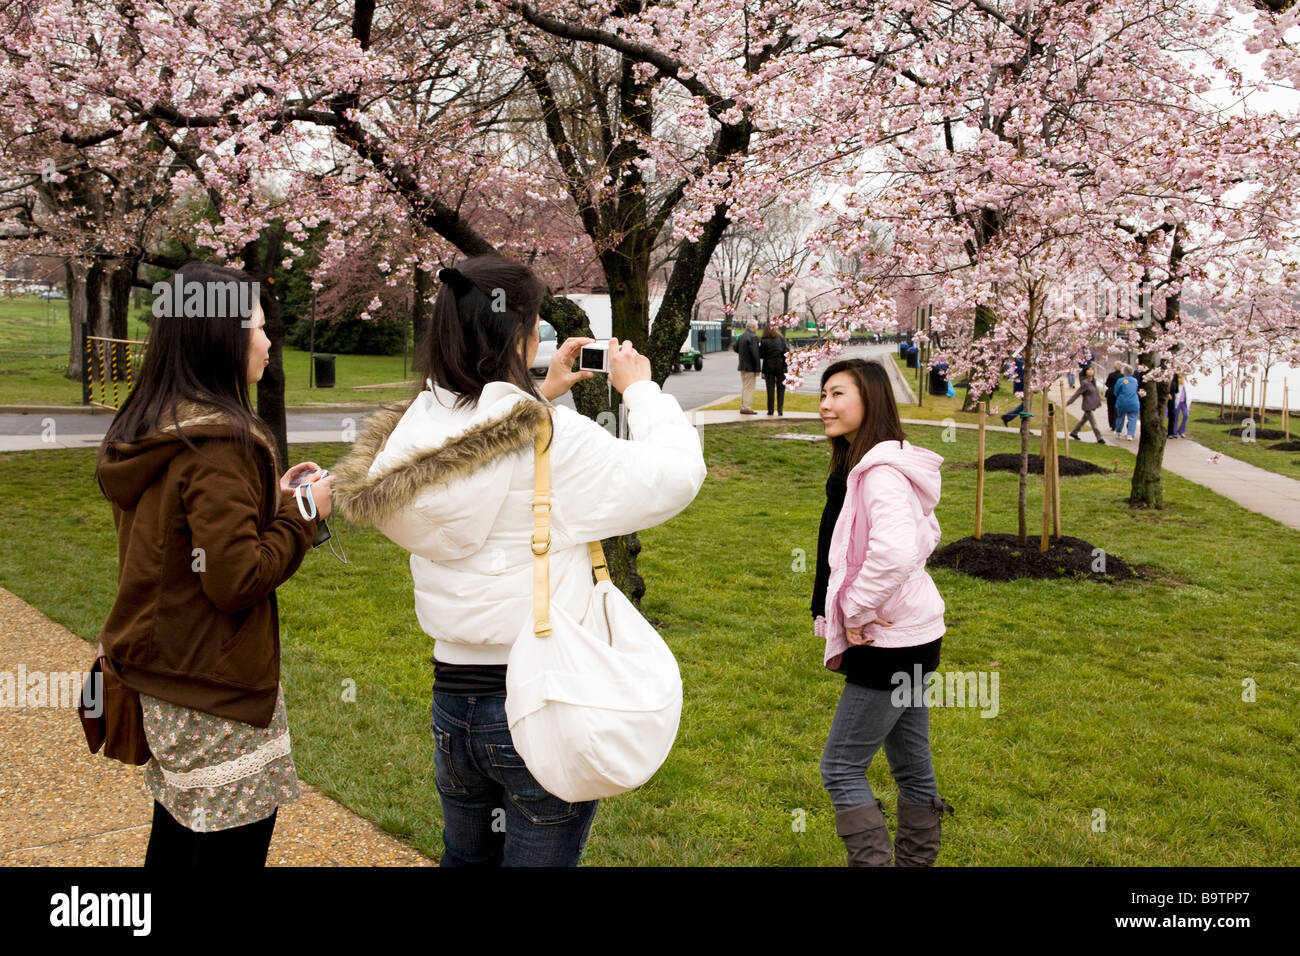 Asiatische weibliche Touristen fotografieren mit Kirschblüten Stockfoto